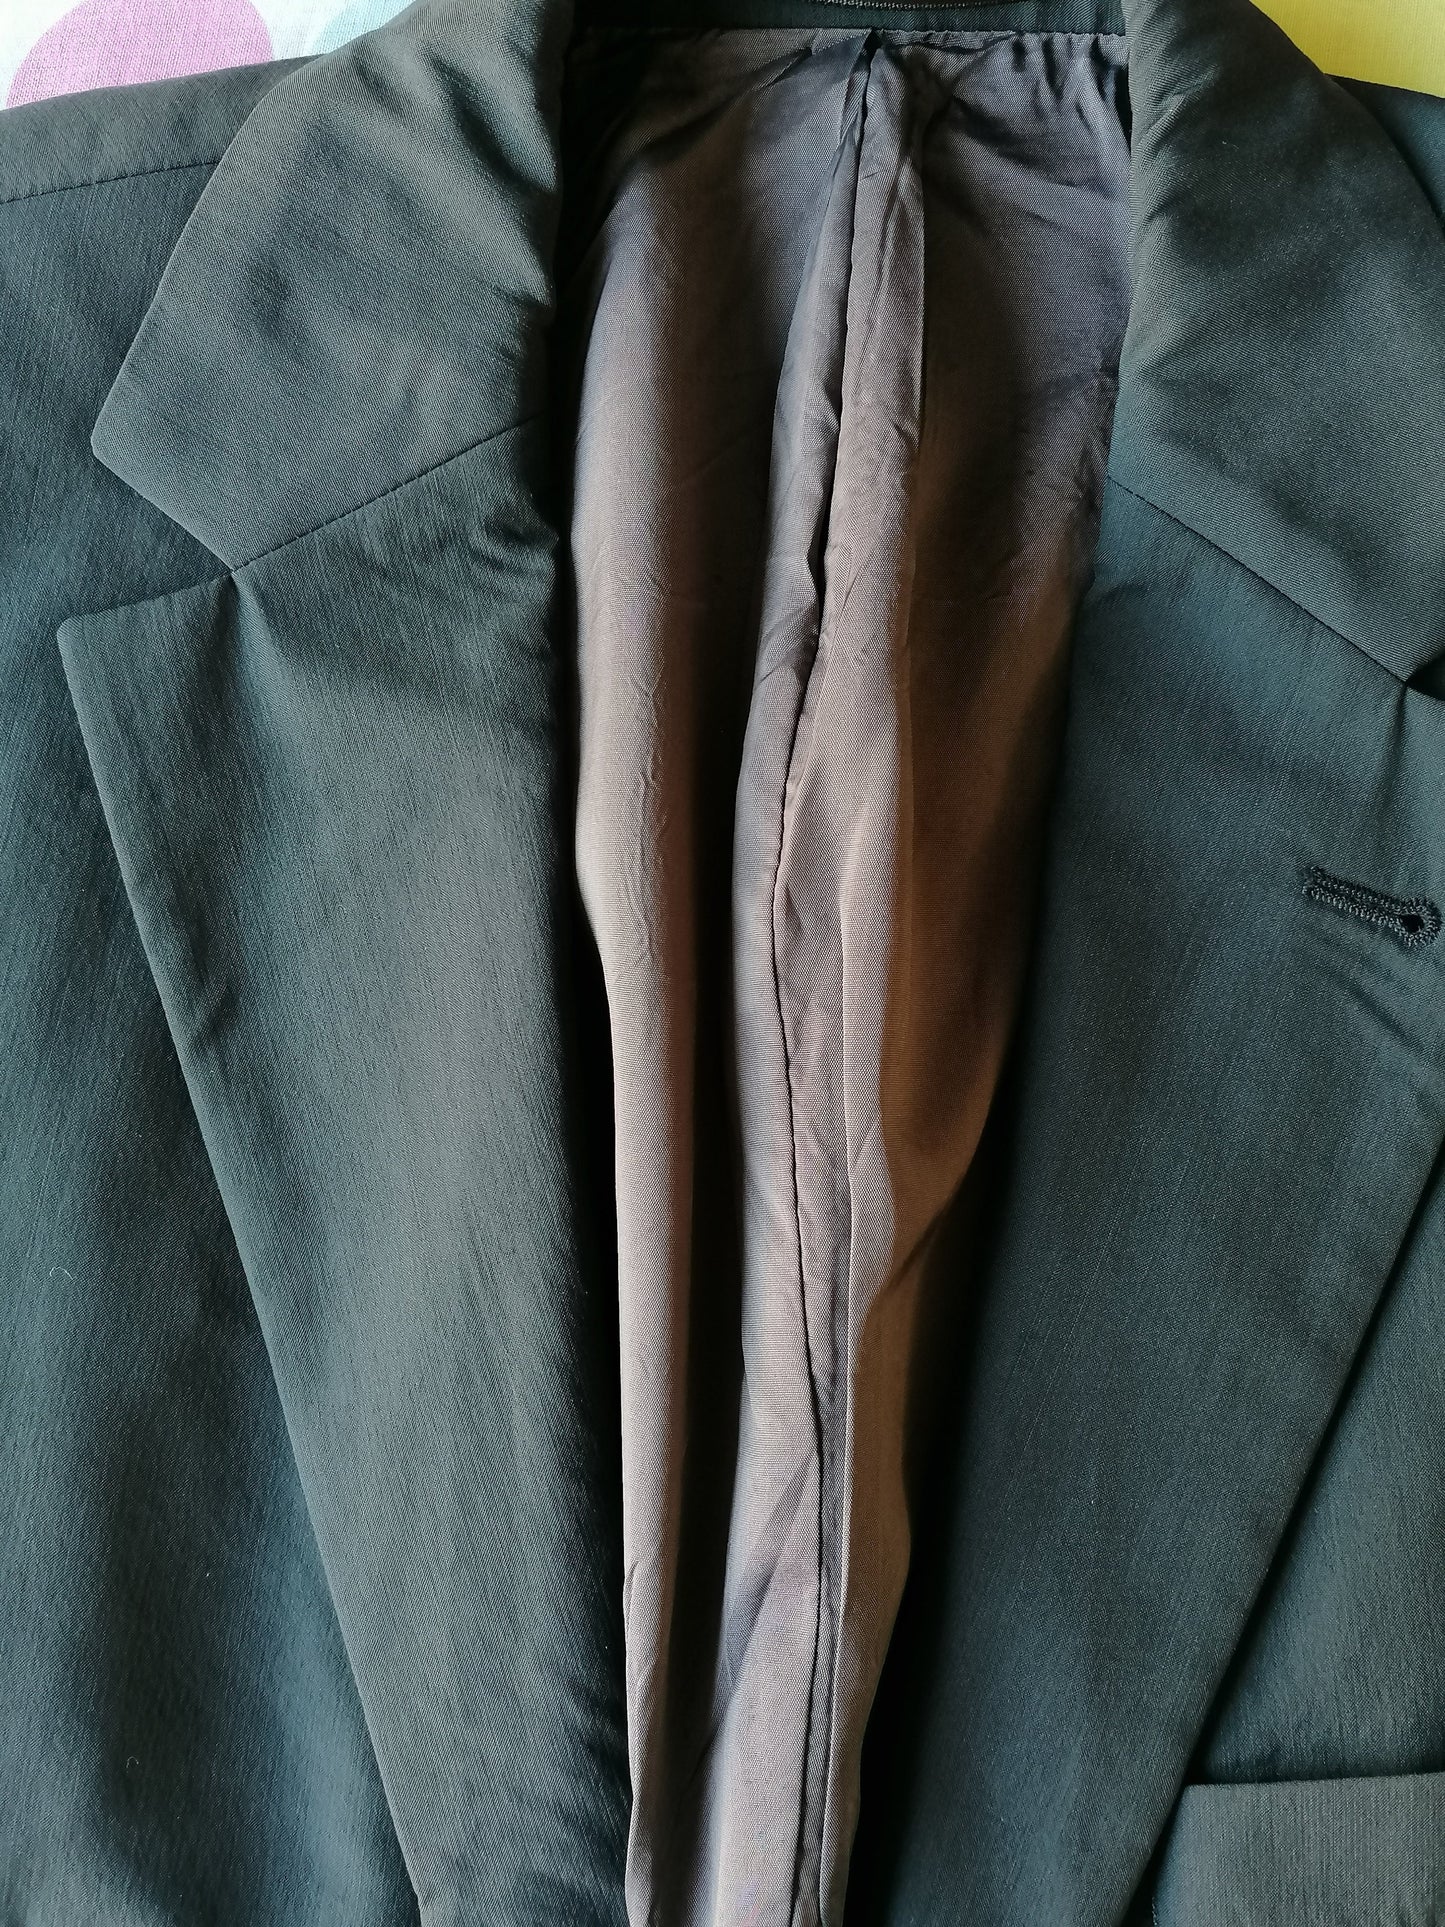 Giacca da boss di Hugo vintage. Verde scuro colorato, leggero lucido. Dimensioni 50 / M. Stretch